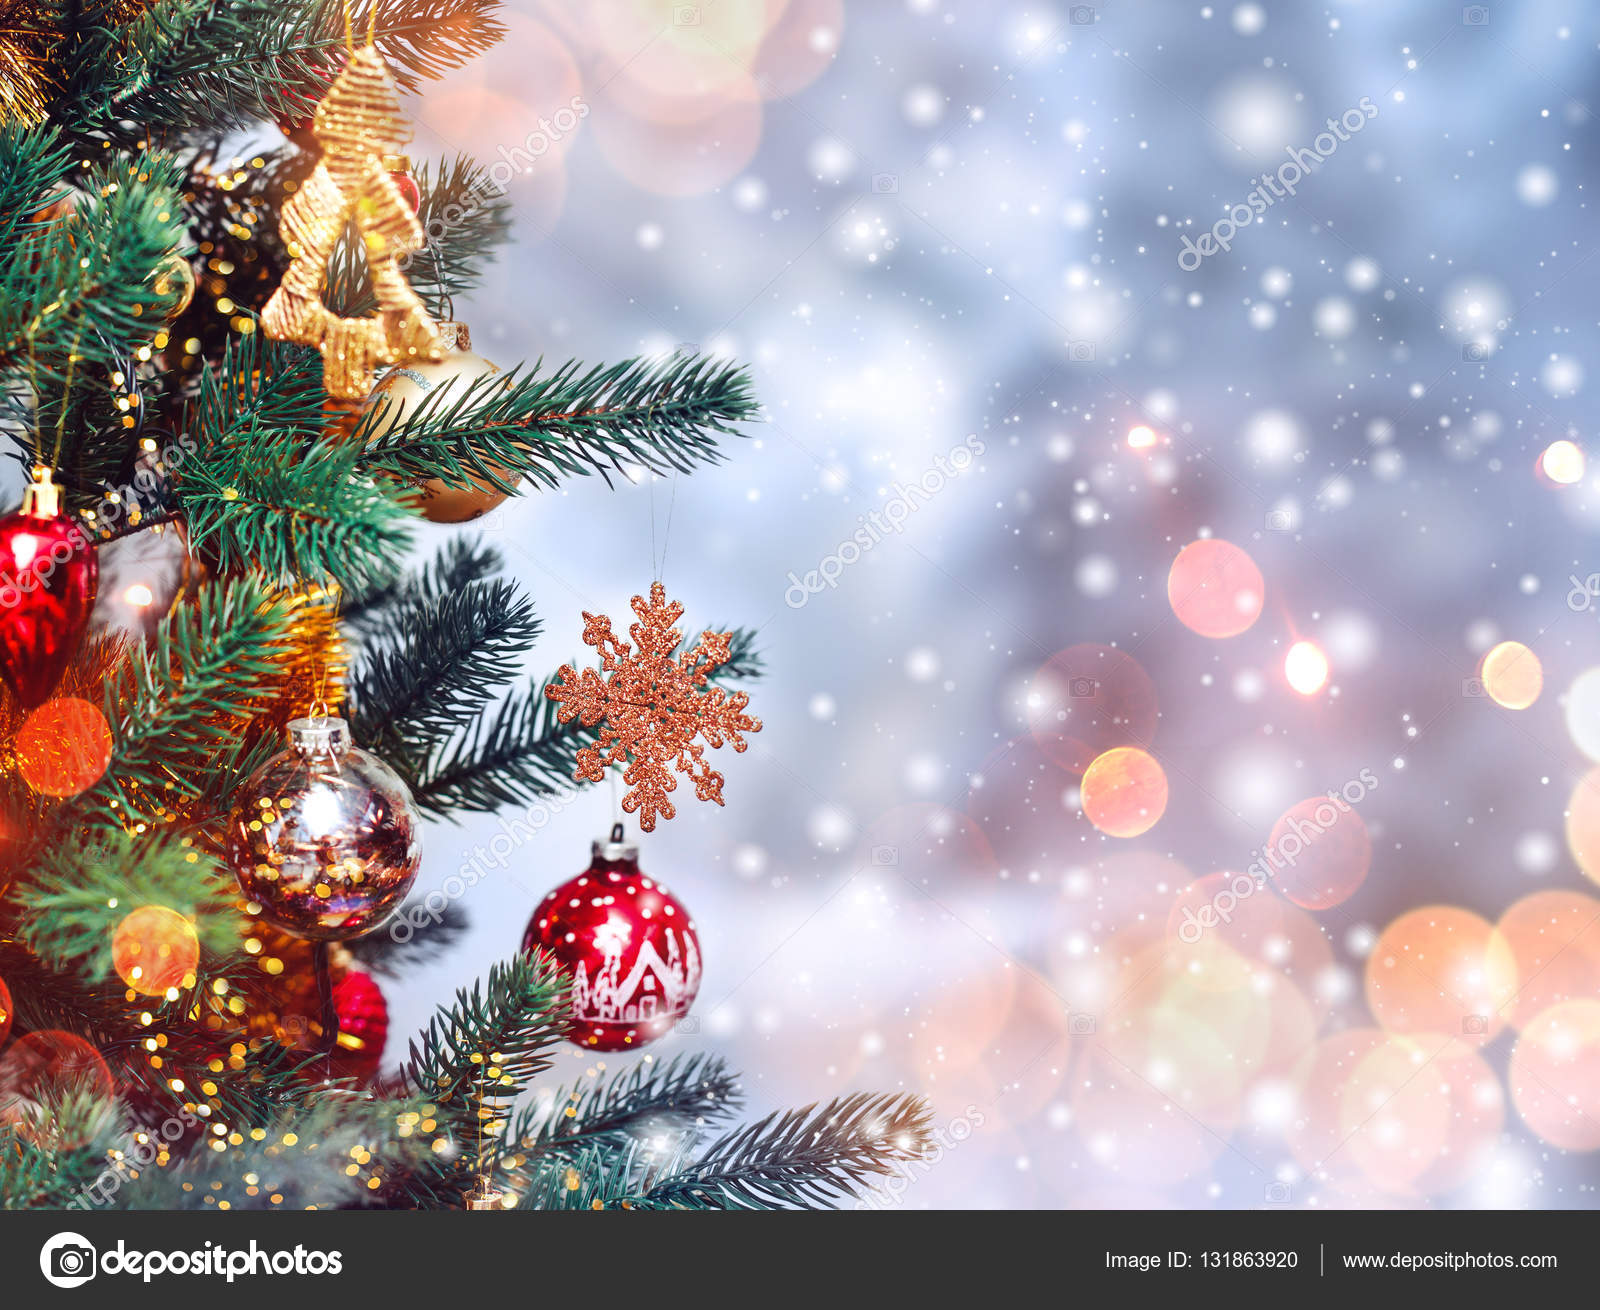 Mùa lễ hội sắp đến rồi, hãy cùng nhau tìm hiểu nền tảng cây thông và trang trí Giáng Sinh với tuyết độc đáo. Tận hưởng không khí ấm áp và hứa hẹn bên gia đình và bạn bè với những kỷ niệm đẹp và ấn tượng nhất.